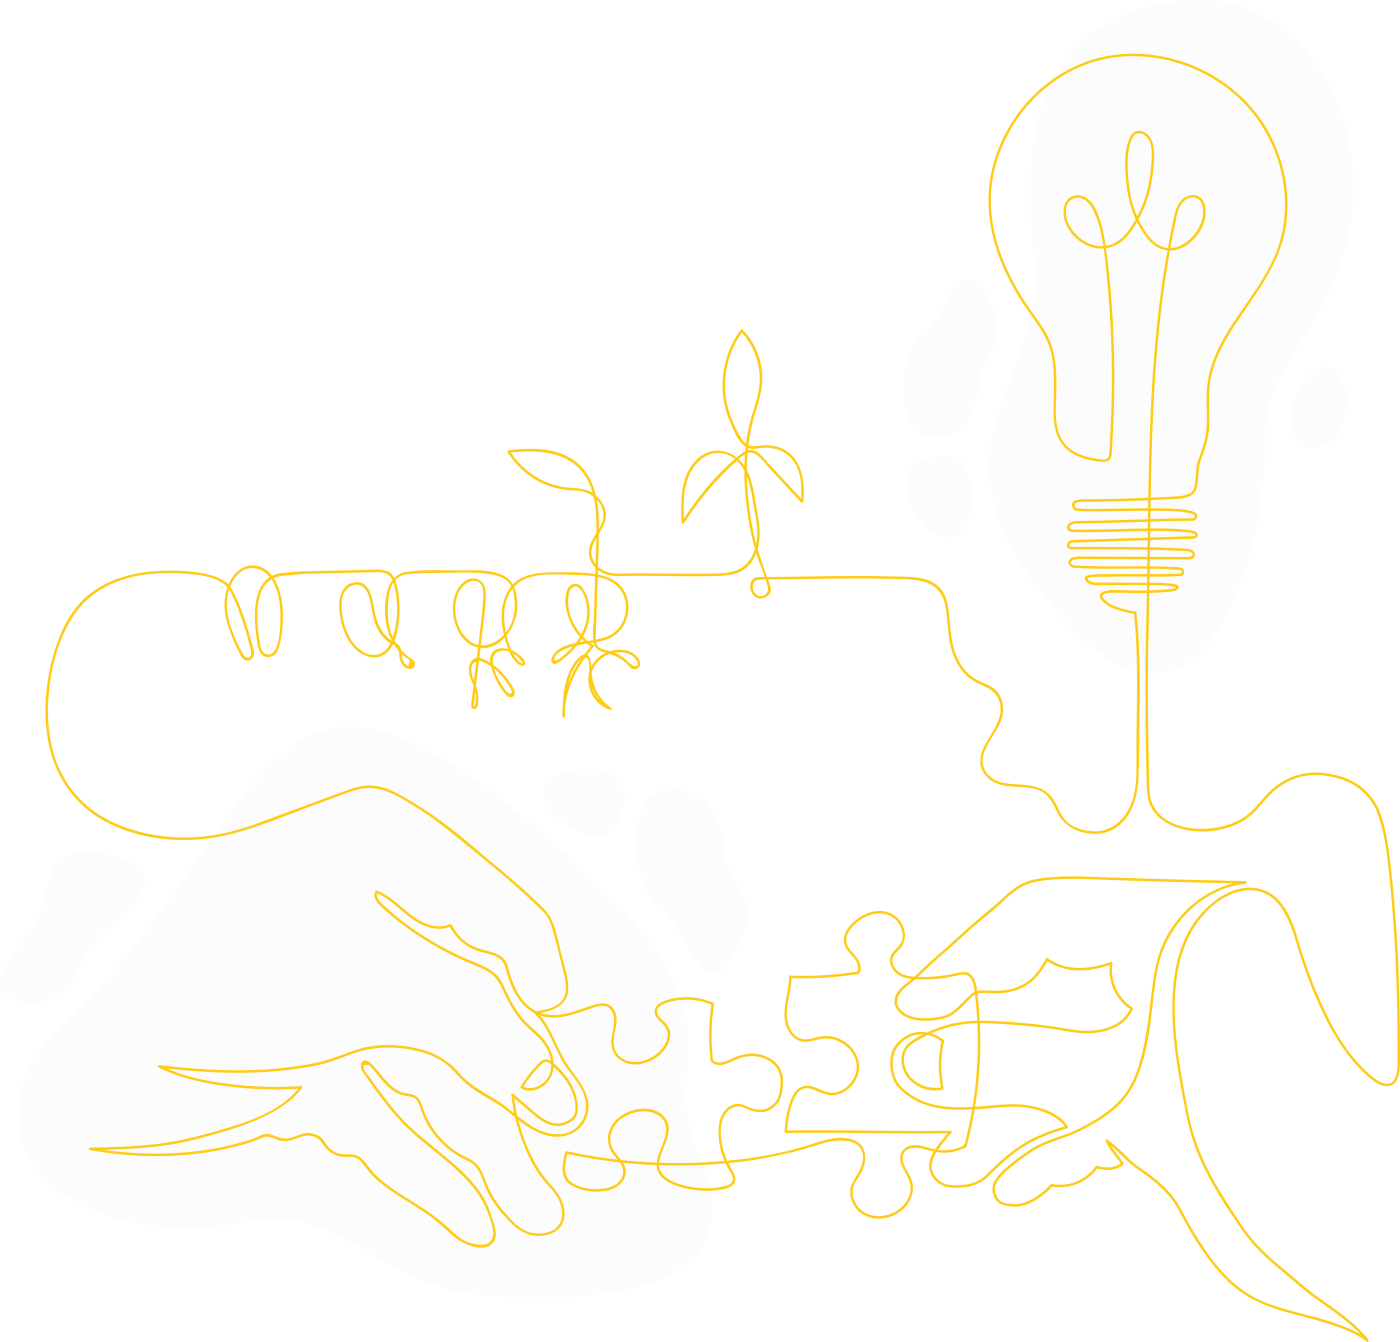 Linjeillustration bestående av två händer som håller i pusselbitar som växer till en ranka och slutar i en glödlampa.